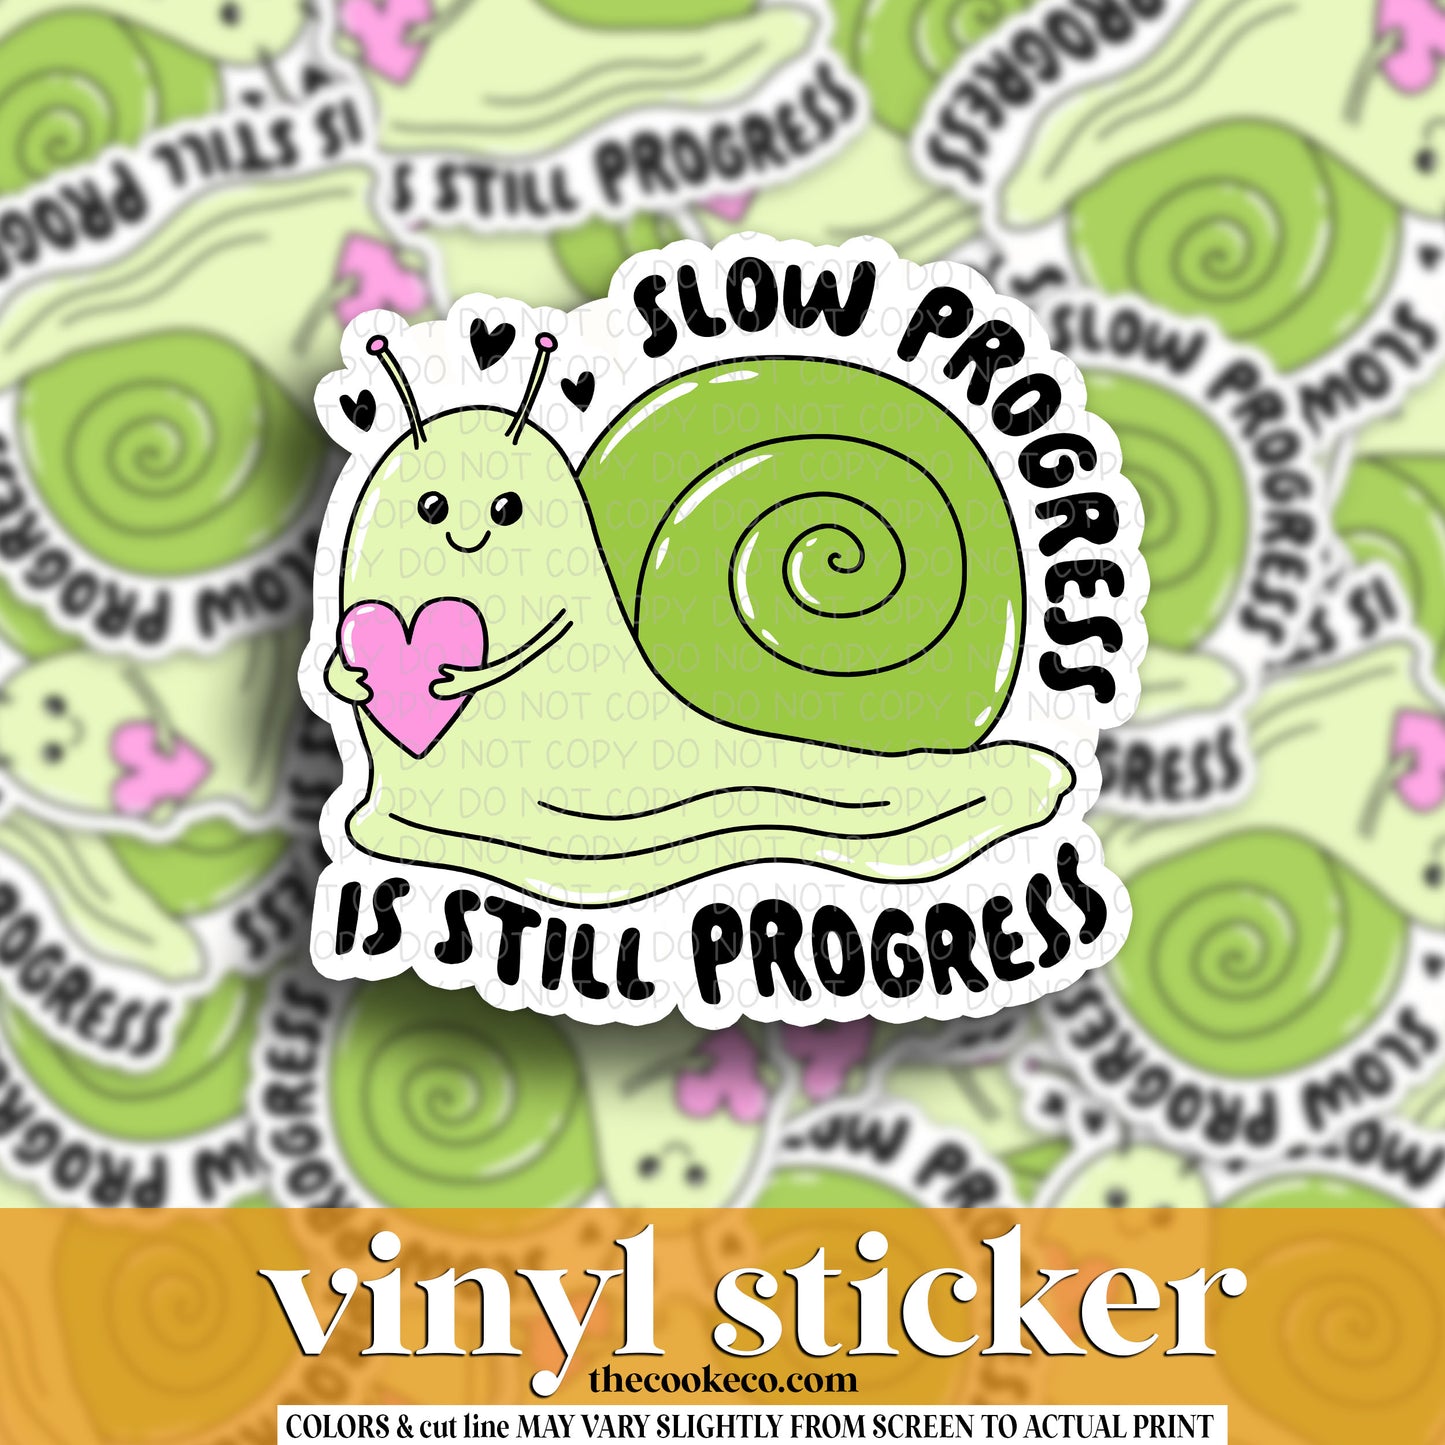 Vinyl Sticker | #V1571 -  SLOW PROGRESS IS STILL PROGRESS